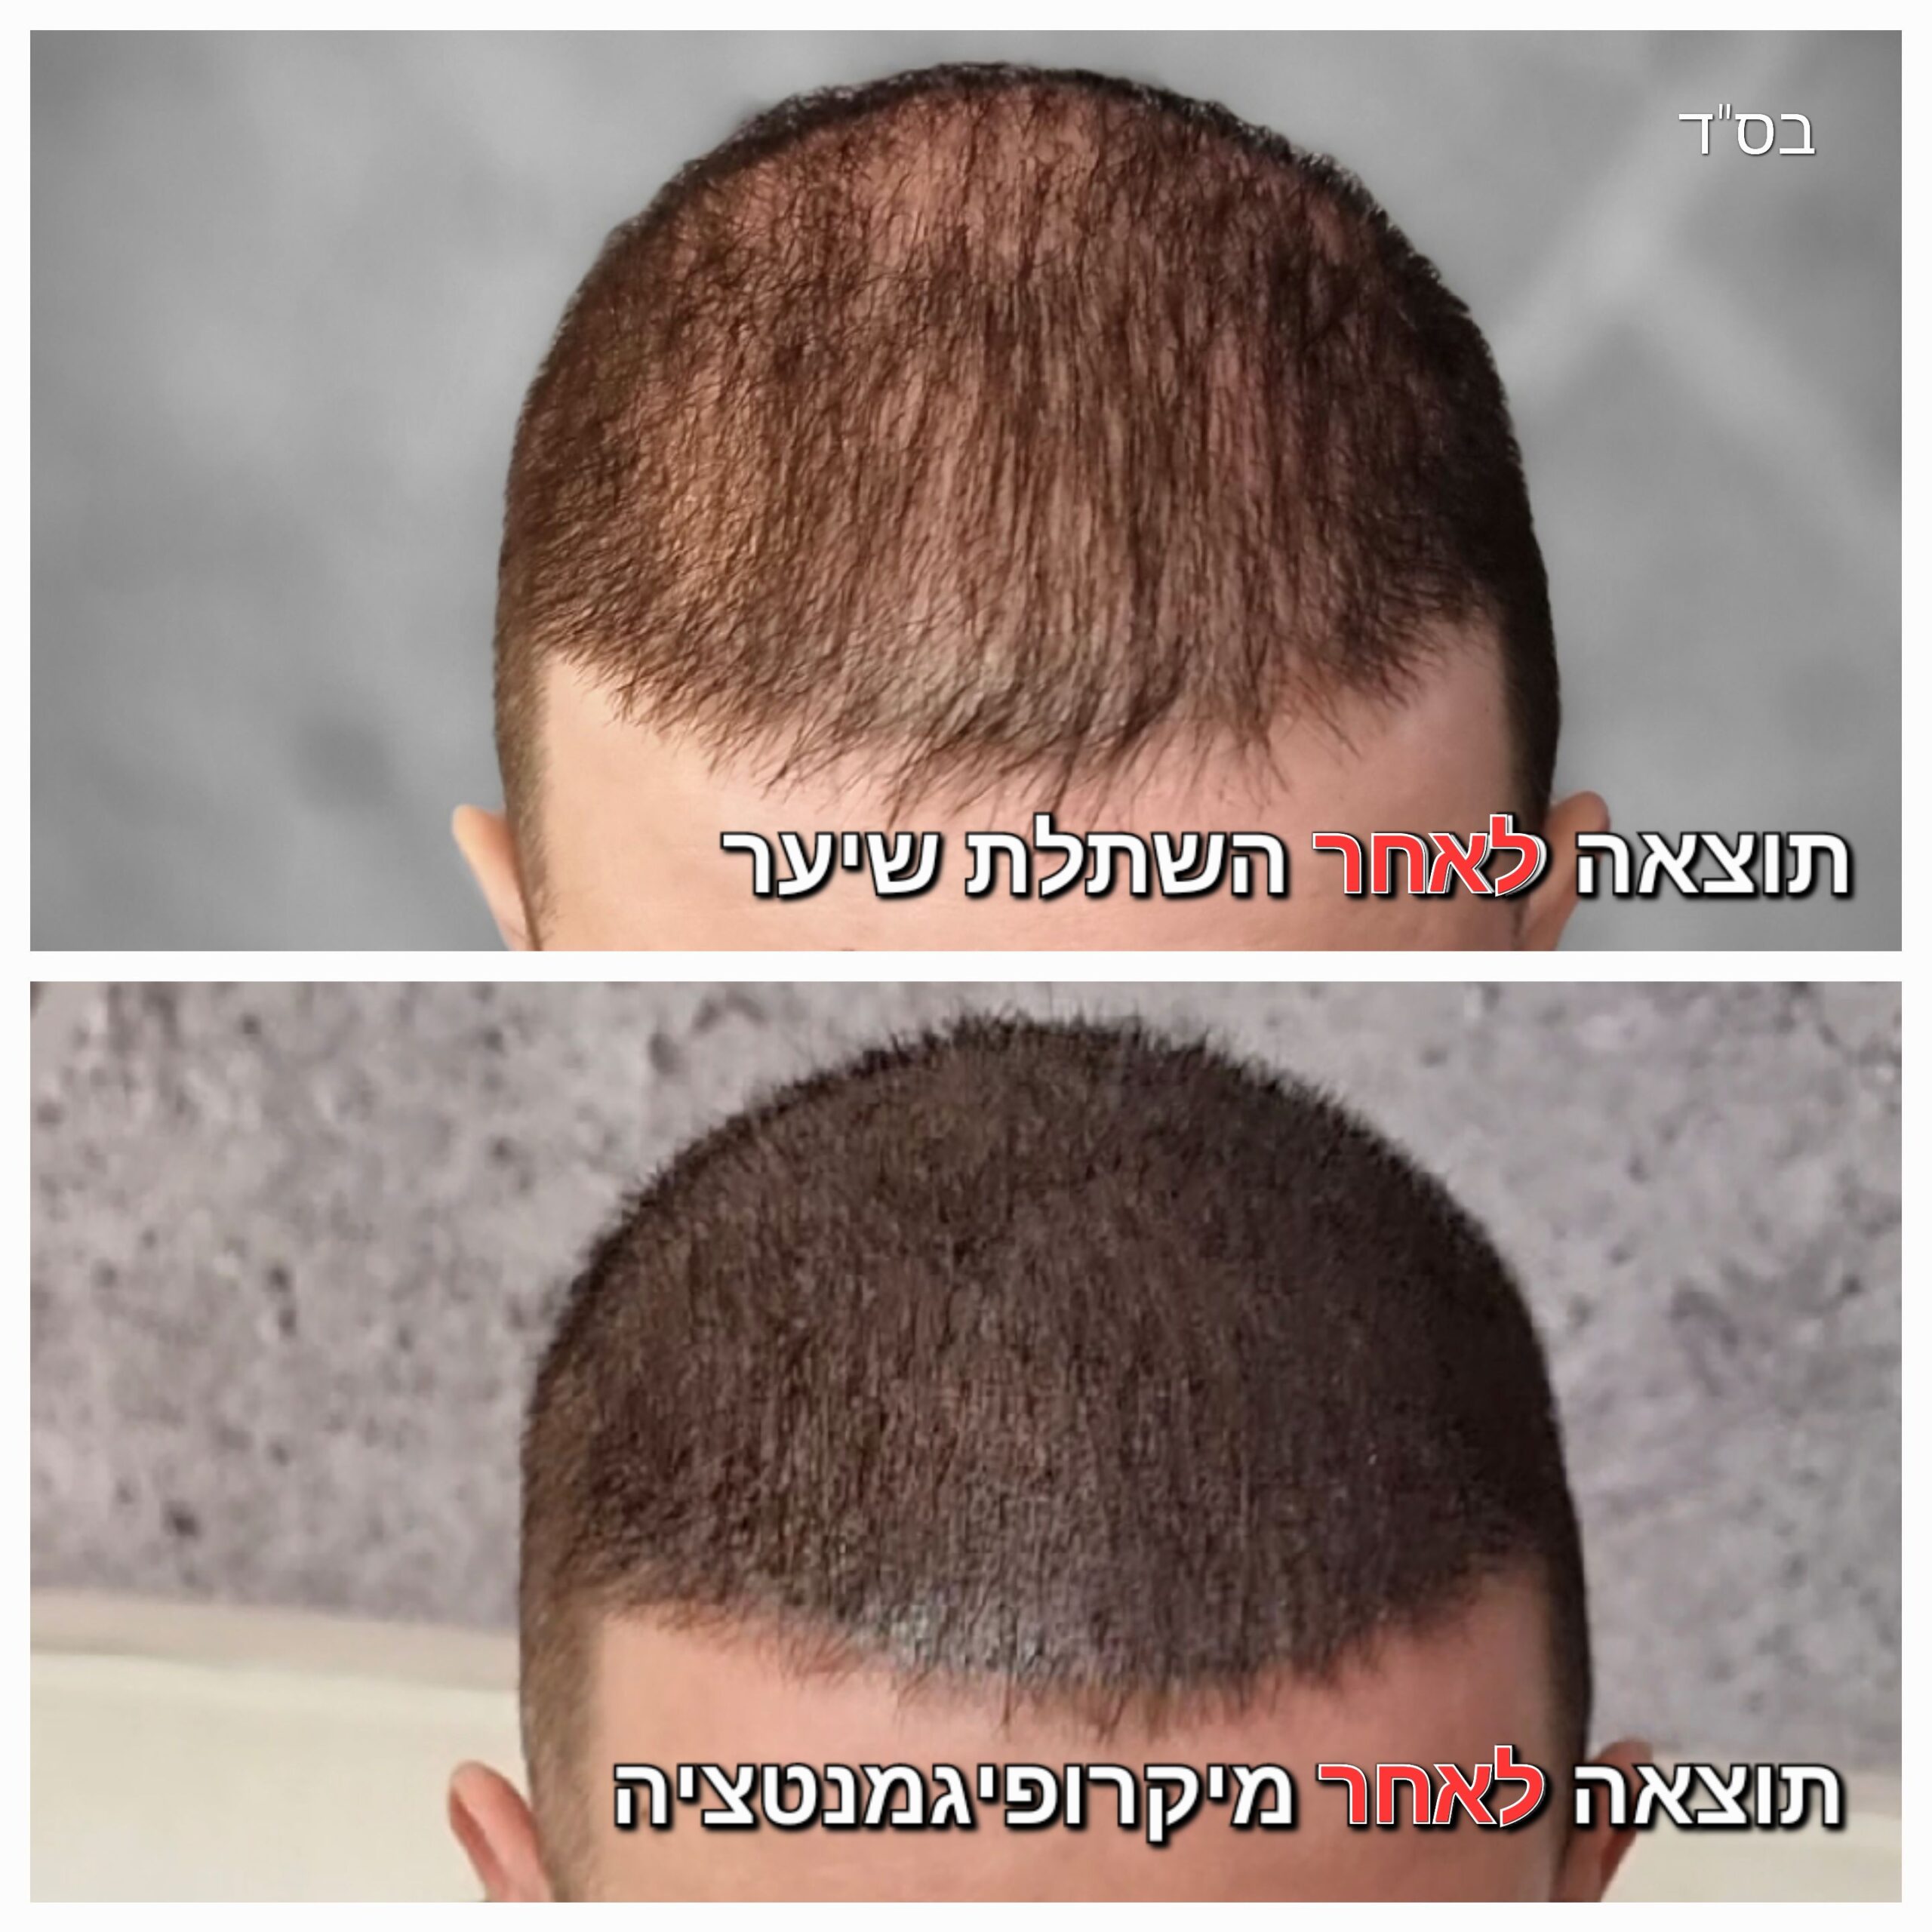 מילוי שיער לאחר השתלת שיער ע"י מיקרופיגמנטציה